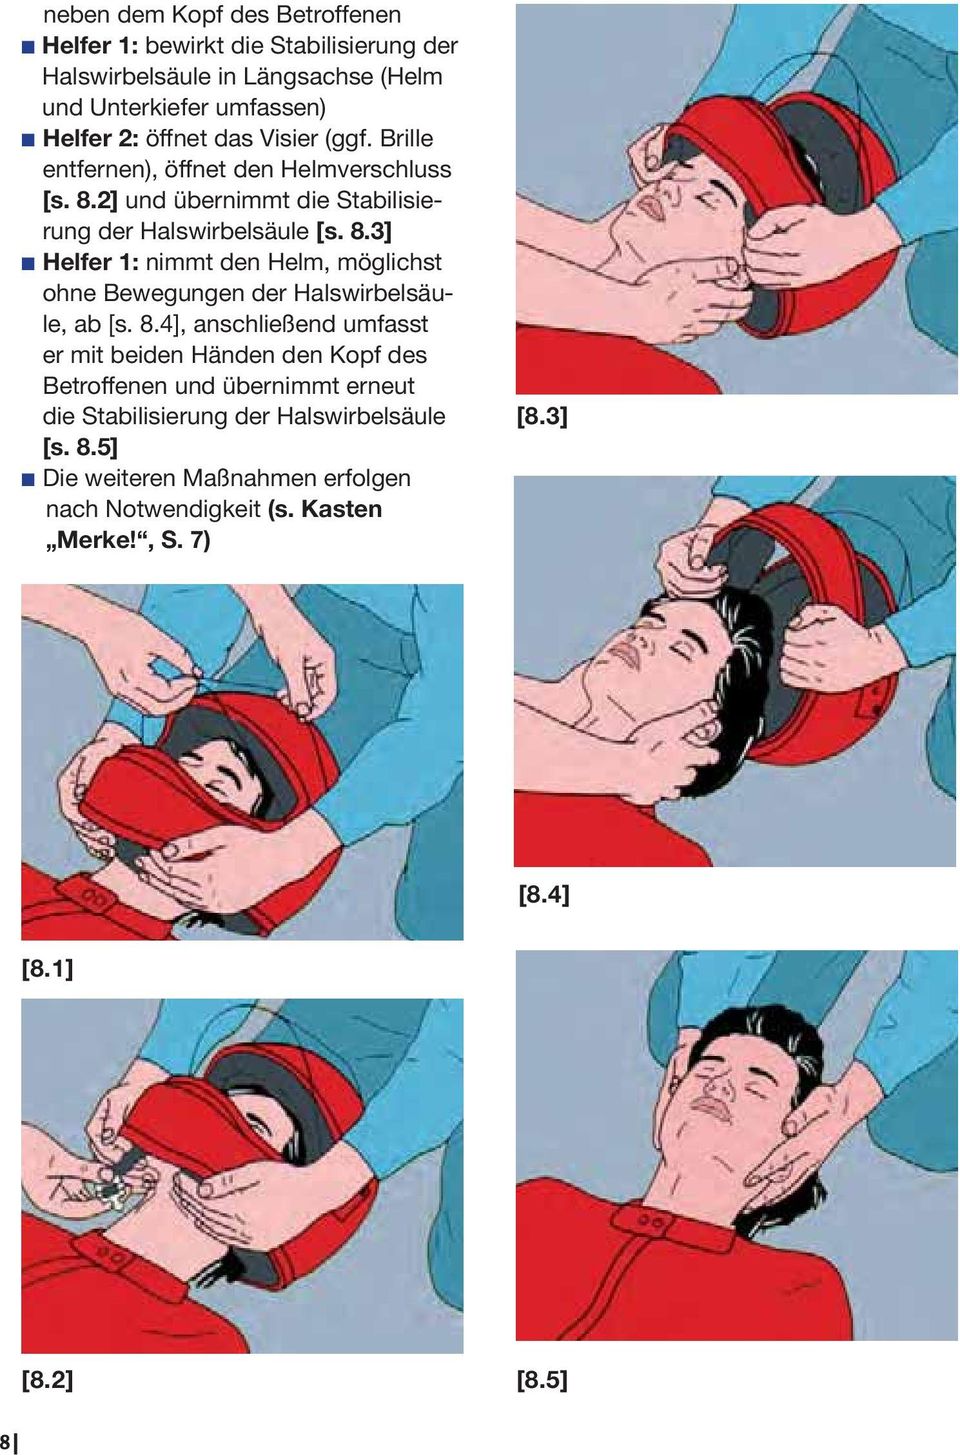 8.4], anschließend umfasst er mit beiden Händen den Kopf des Betroffenen und übernimmt erneut die Stabilisierung der Halswirbelsäule [s. 8.